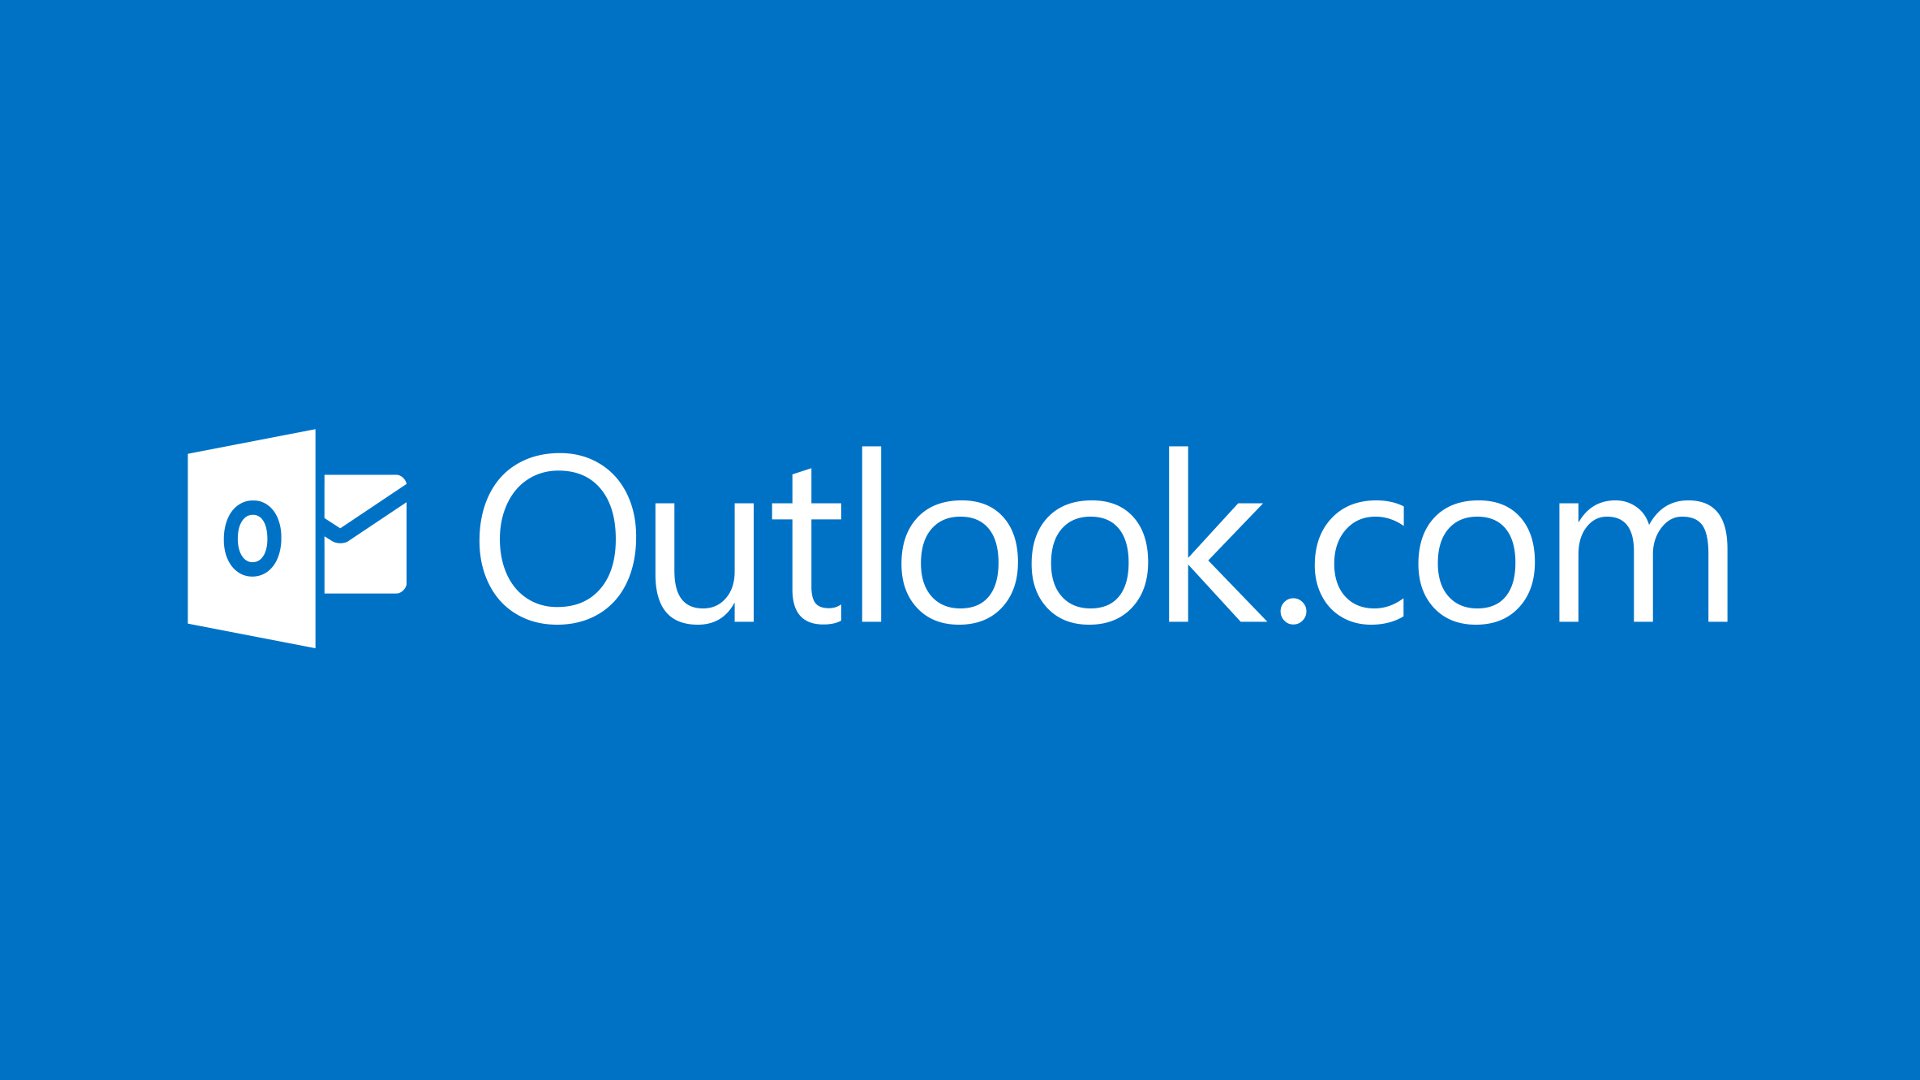 مايكروسوفت تعرض مزيدا من الإعلانات داخل تطبيق Outlook قريبا